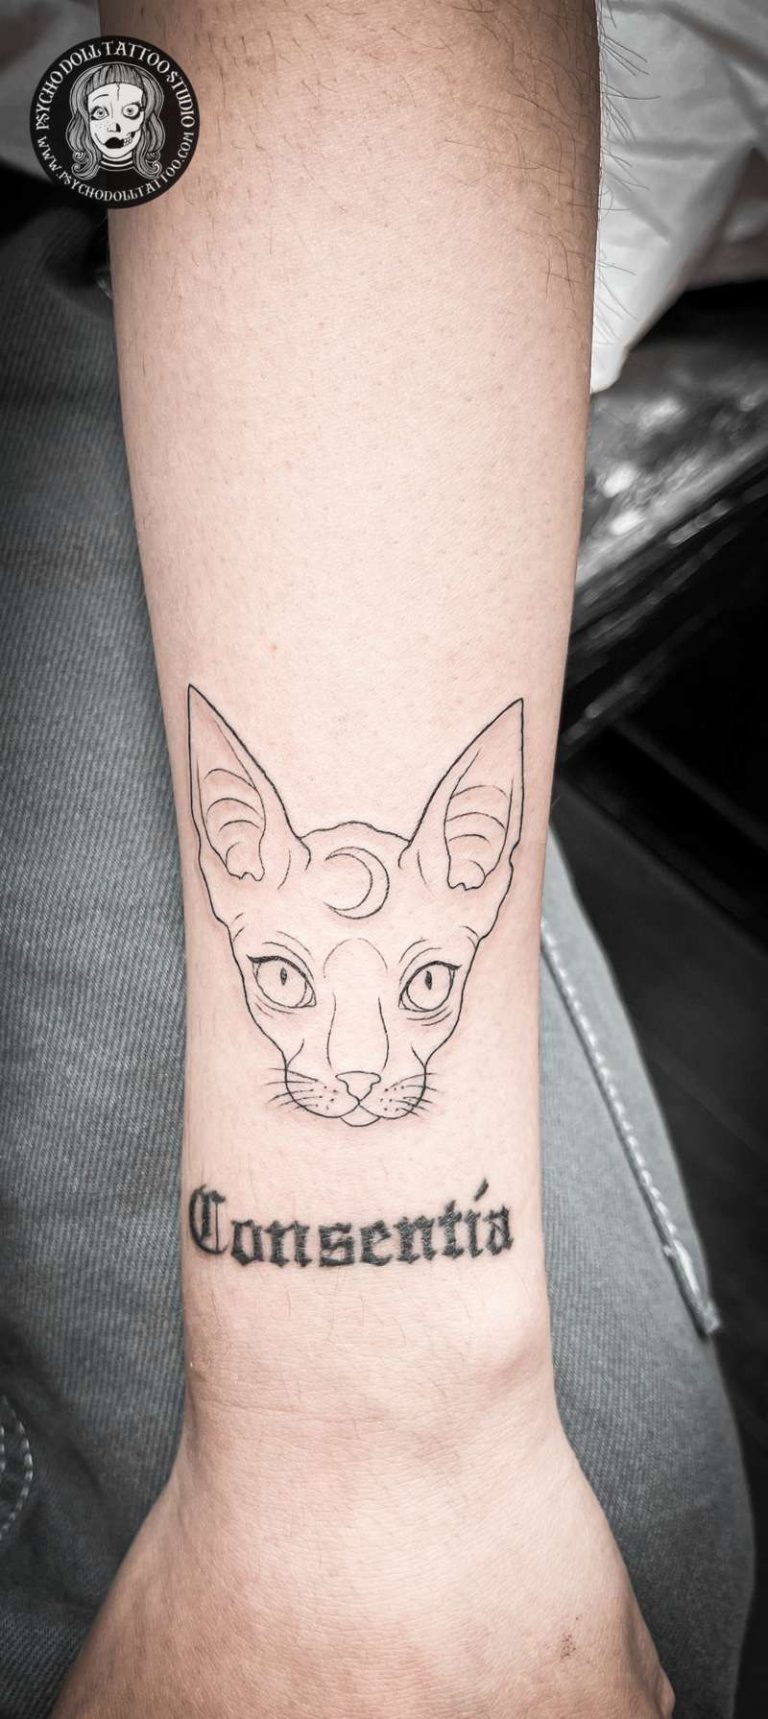 consentia tattoo con gato